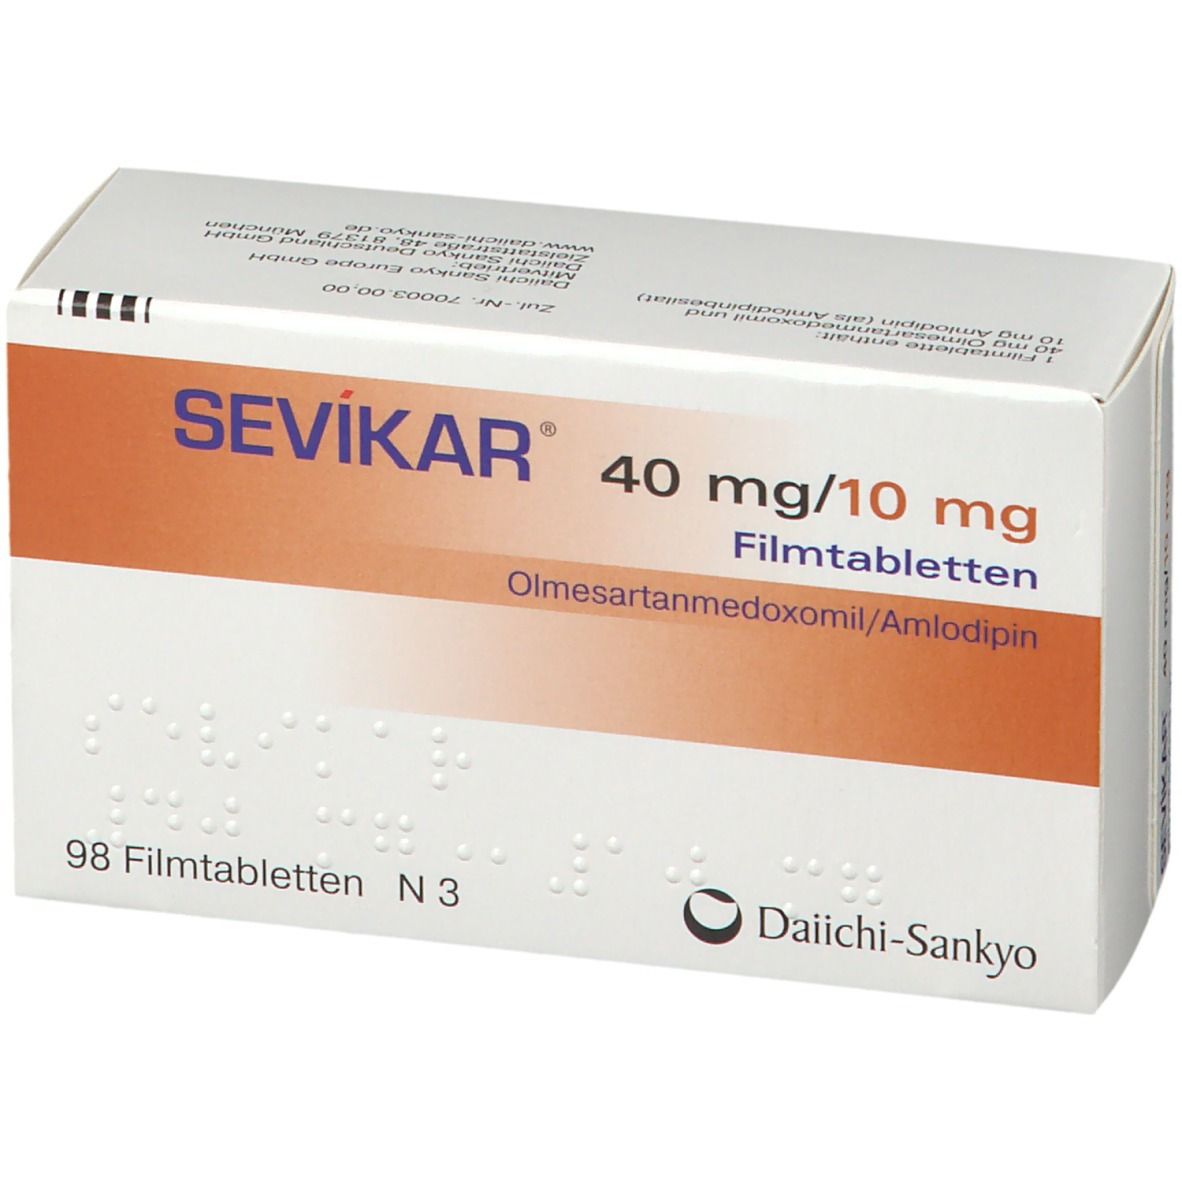 SEVIKAR® 40 mg/10 mg